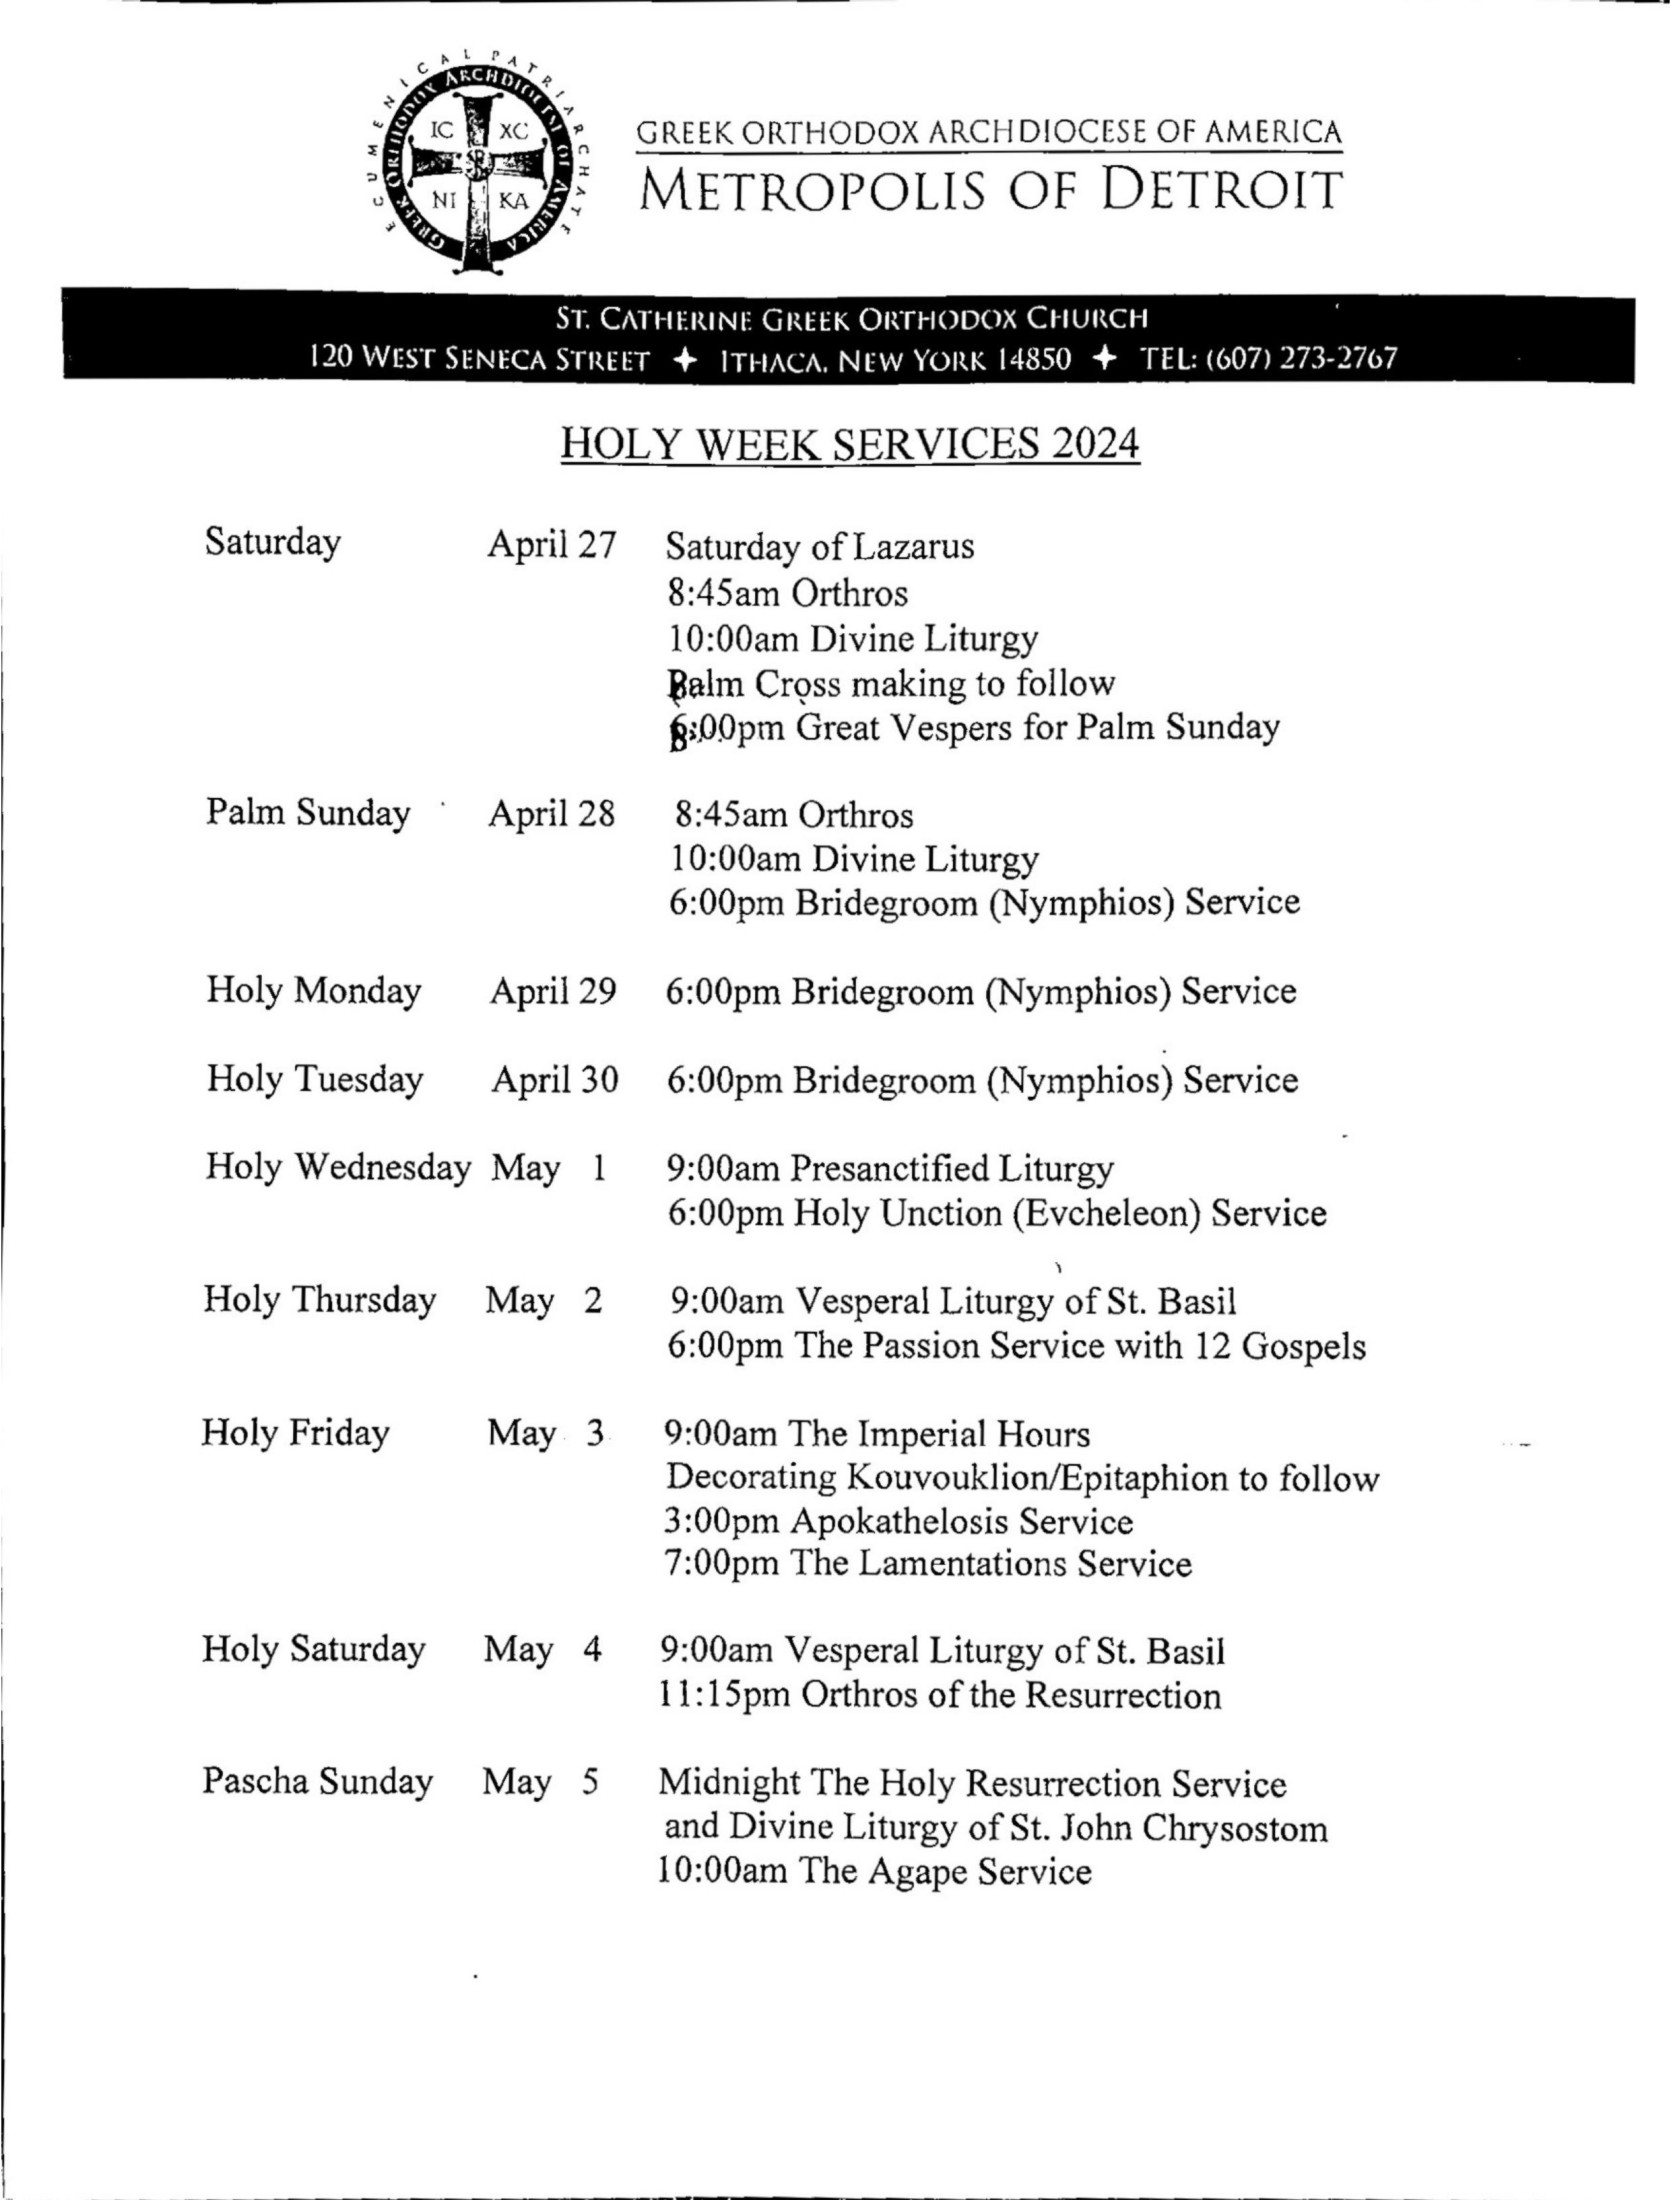 holy week schedule